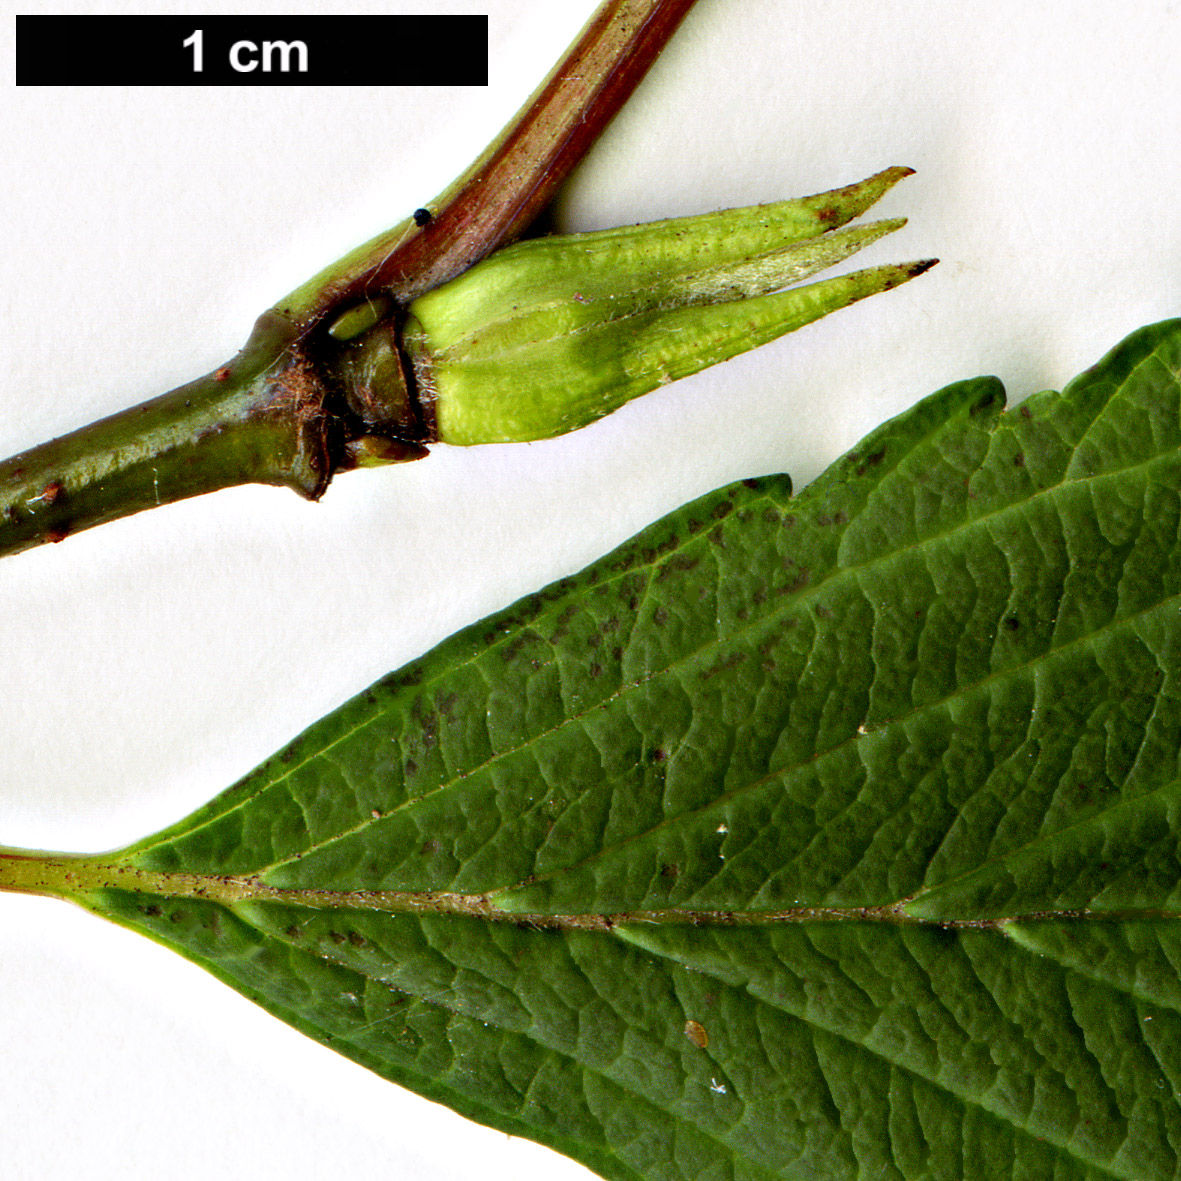 High resolution image: Family: Adoxaceae - Genus: Viburnum - Taxon: farreri